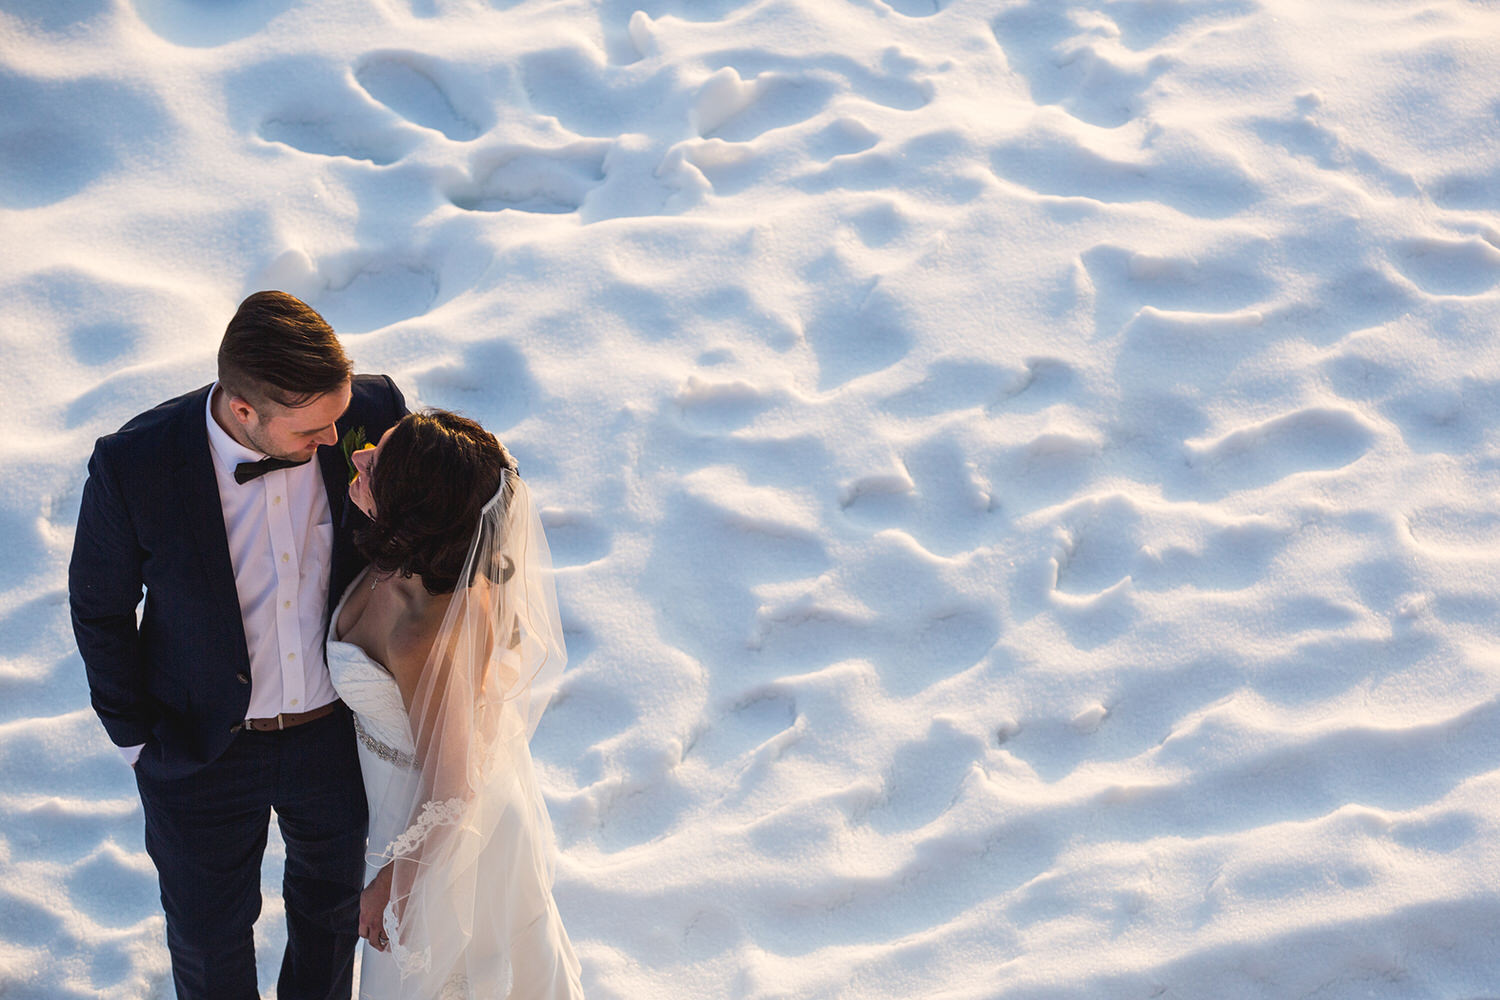 Snow Mountain weddings